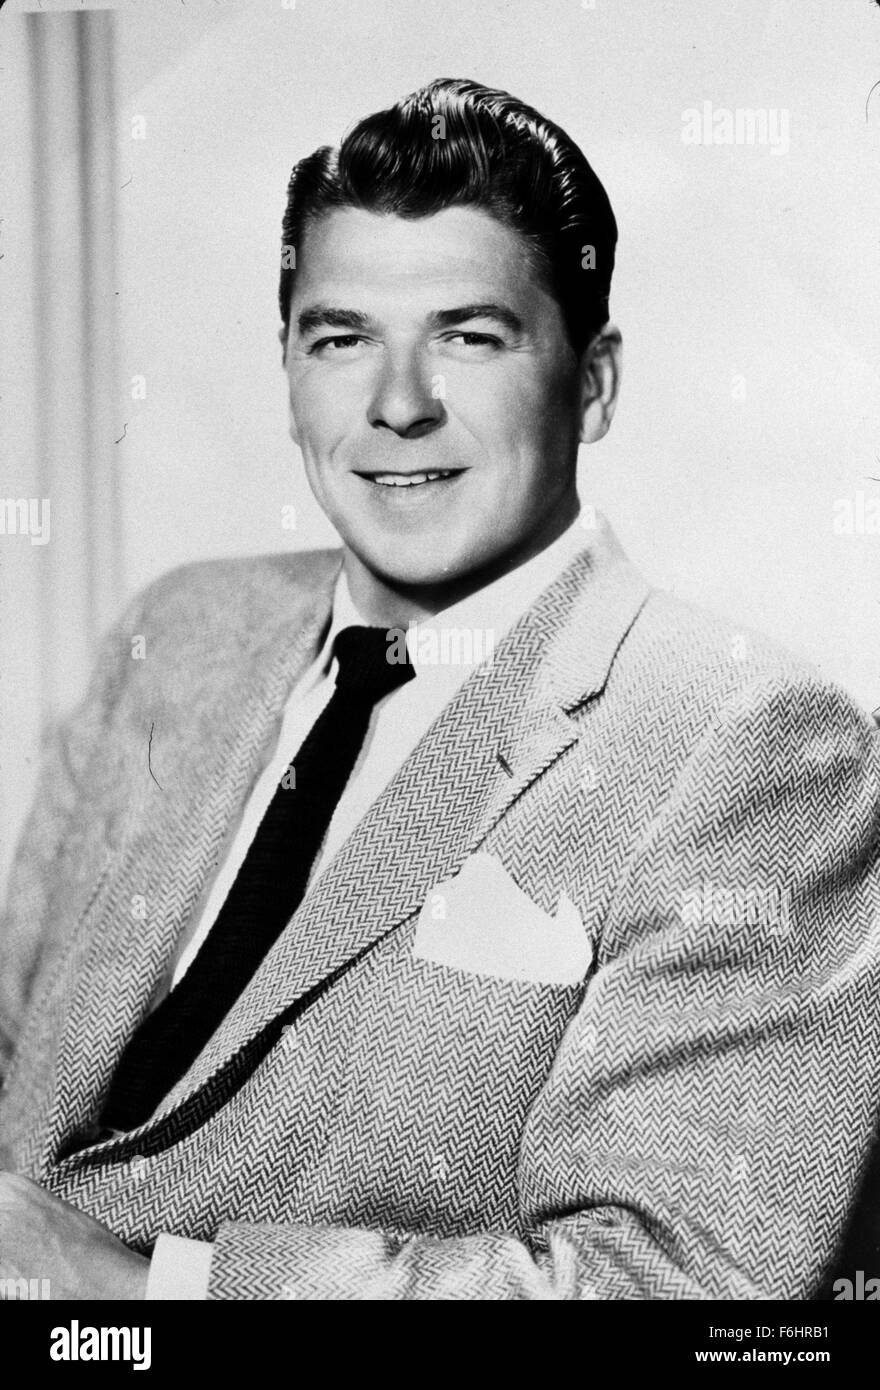 1956, il titolo del film: GENERAL ELECTRIC THEATRE, Studio: CBS, nella foto: RONALD REAGAN, STUDIO, Ritratto, Sport giacca. (Credito Immagine: SNAP) Foto Stock